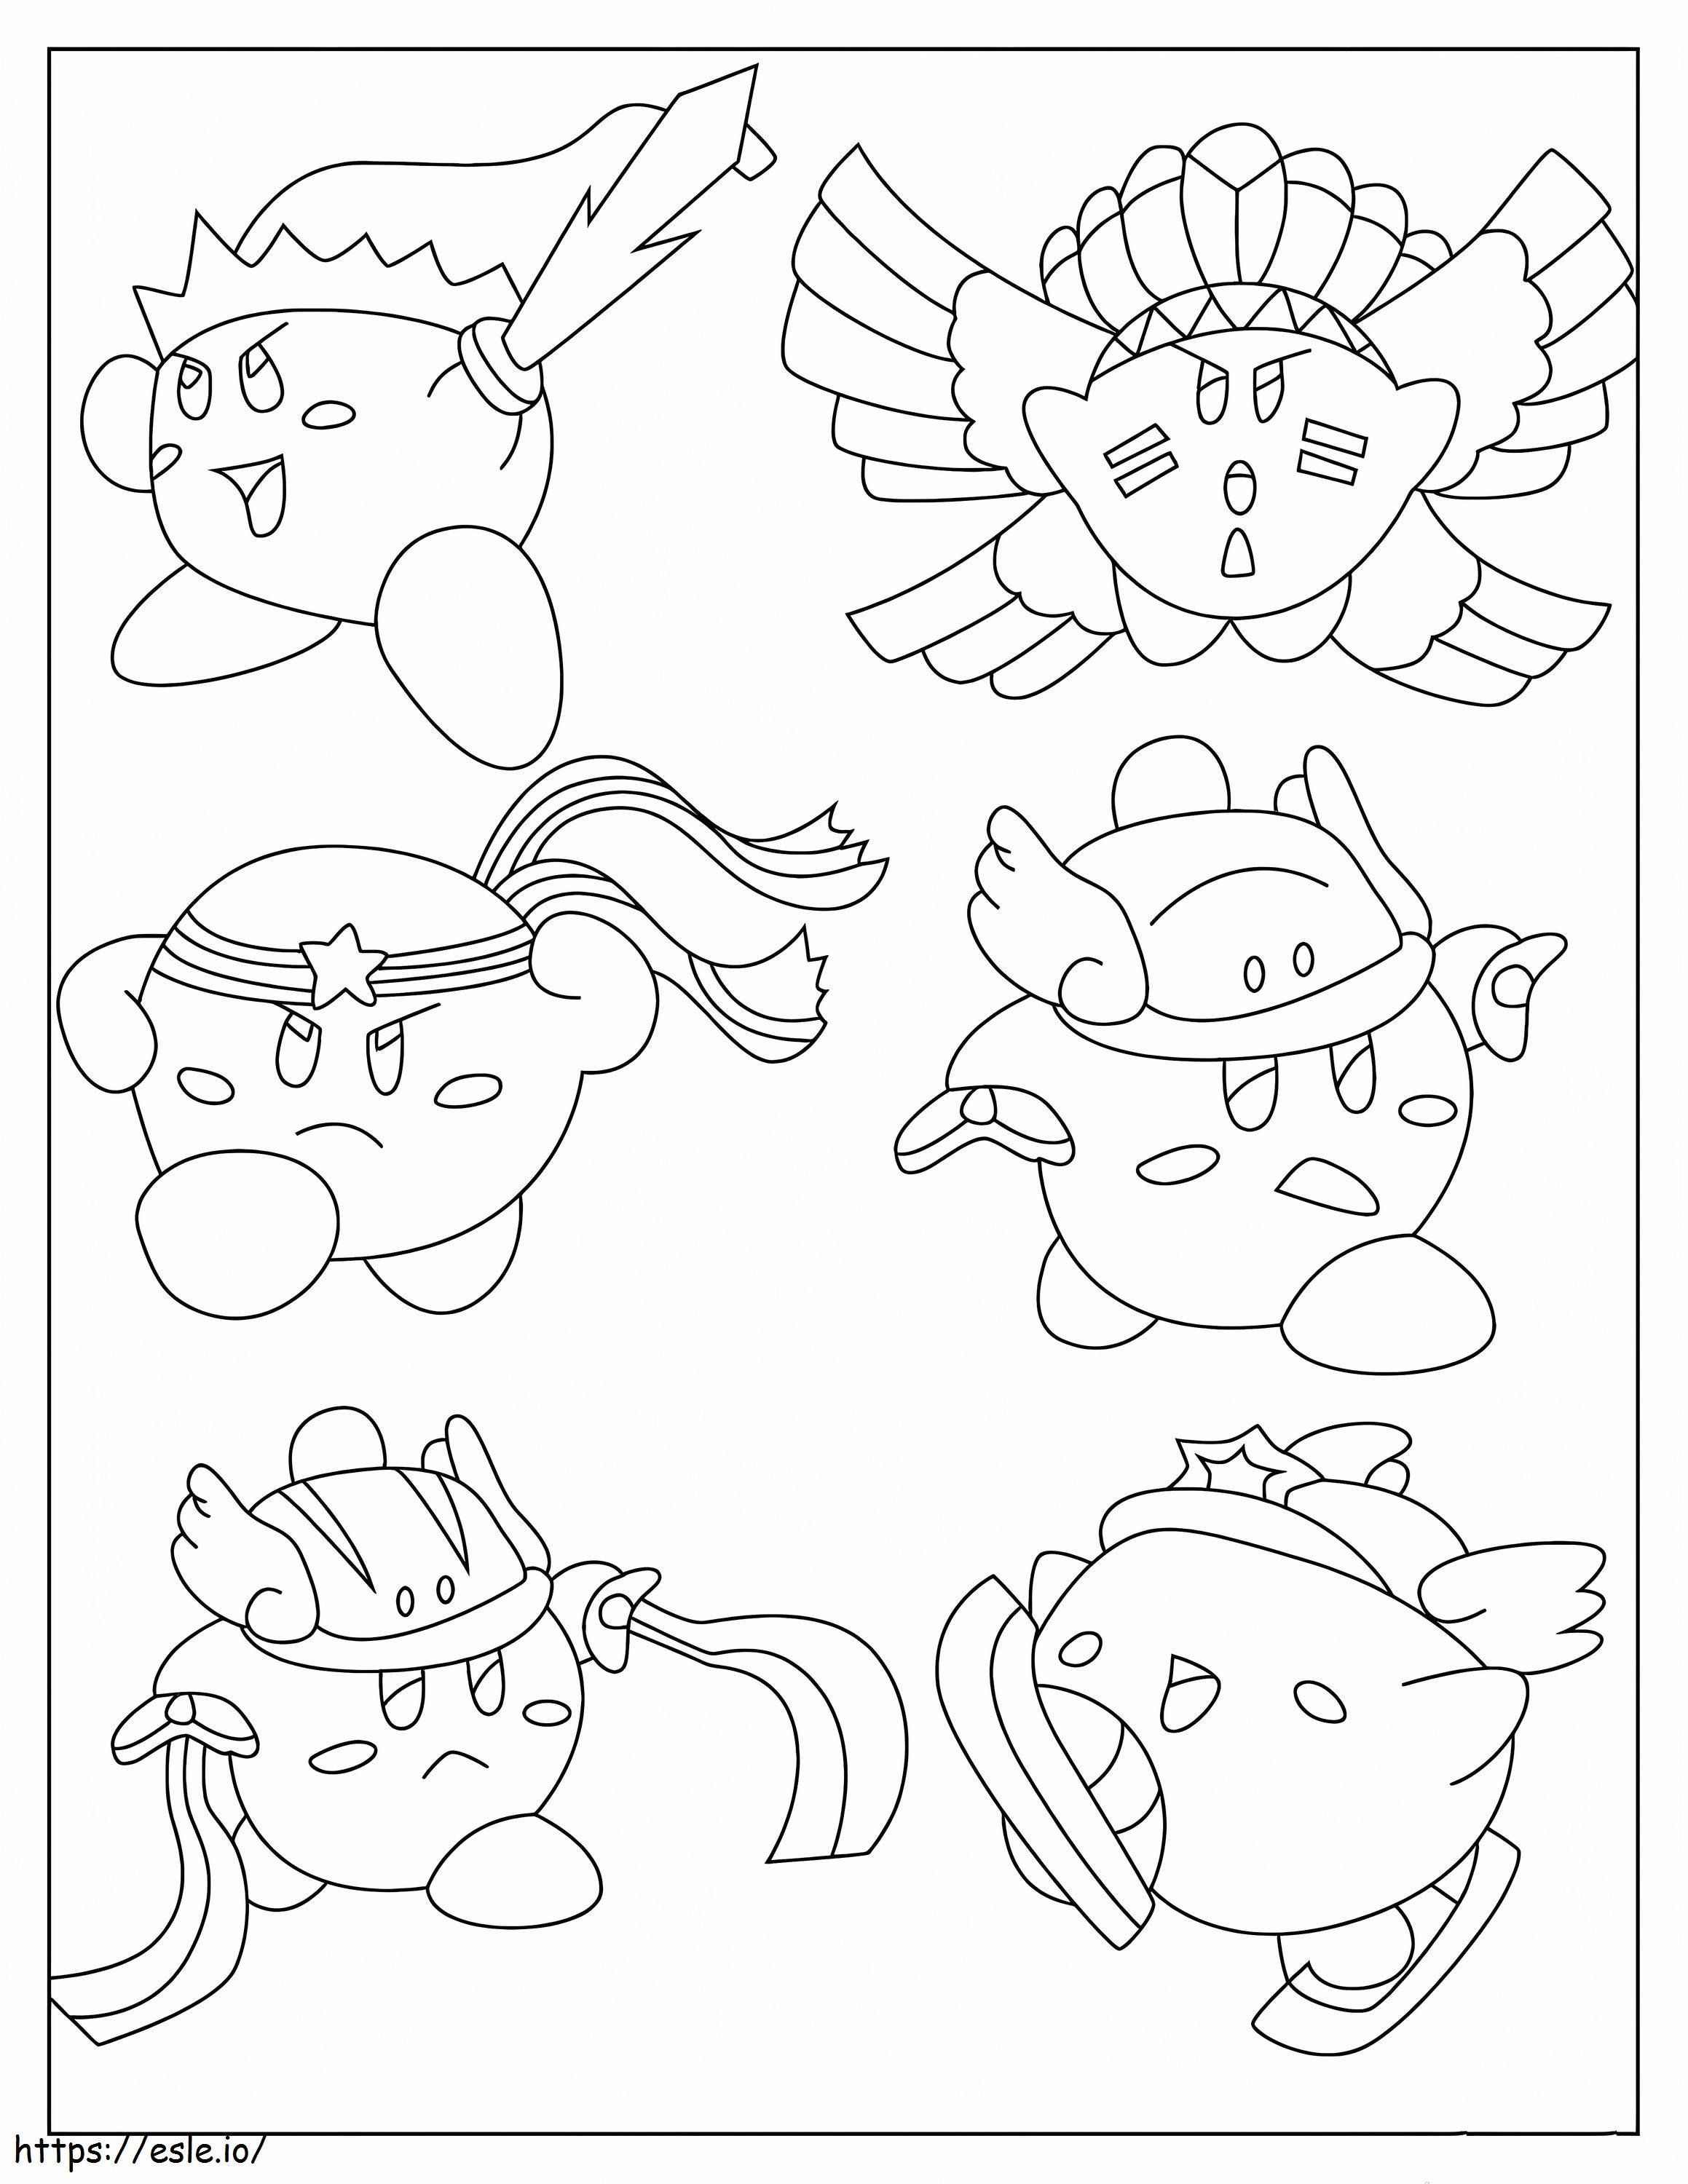 Seis pieles de Kirby para colorear